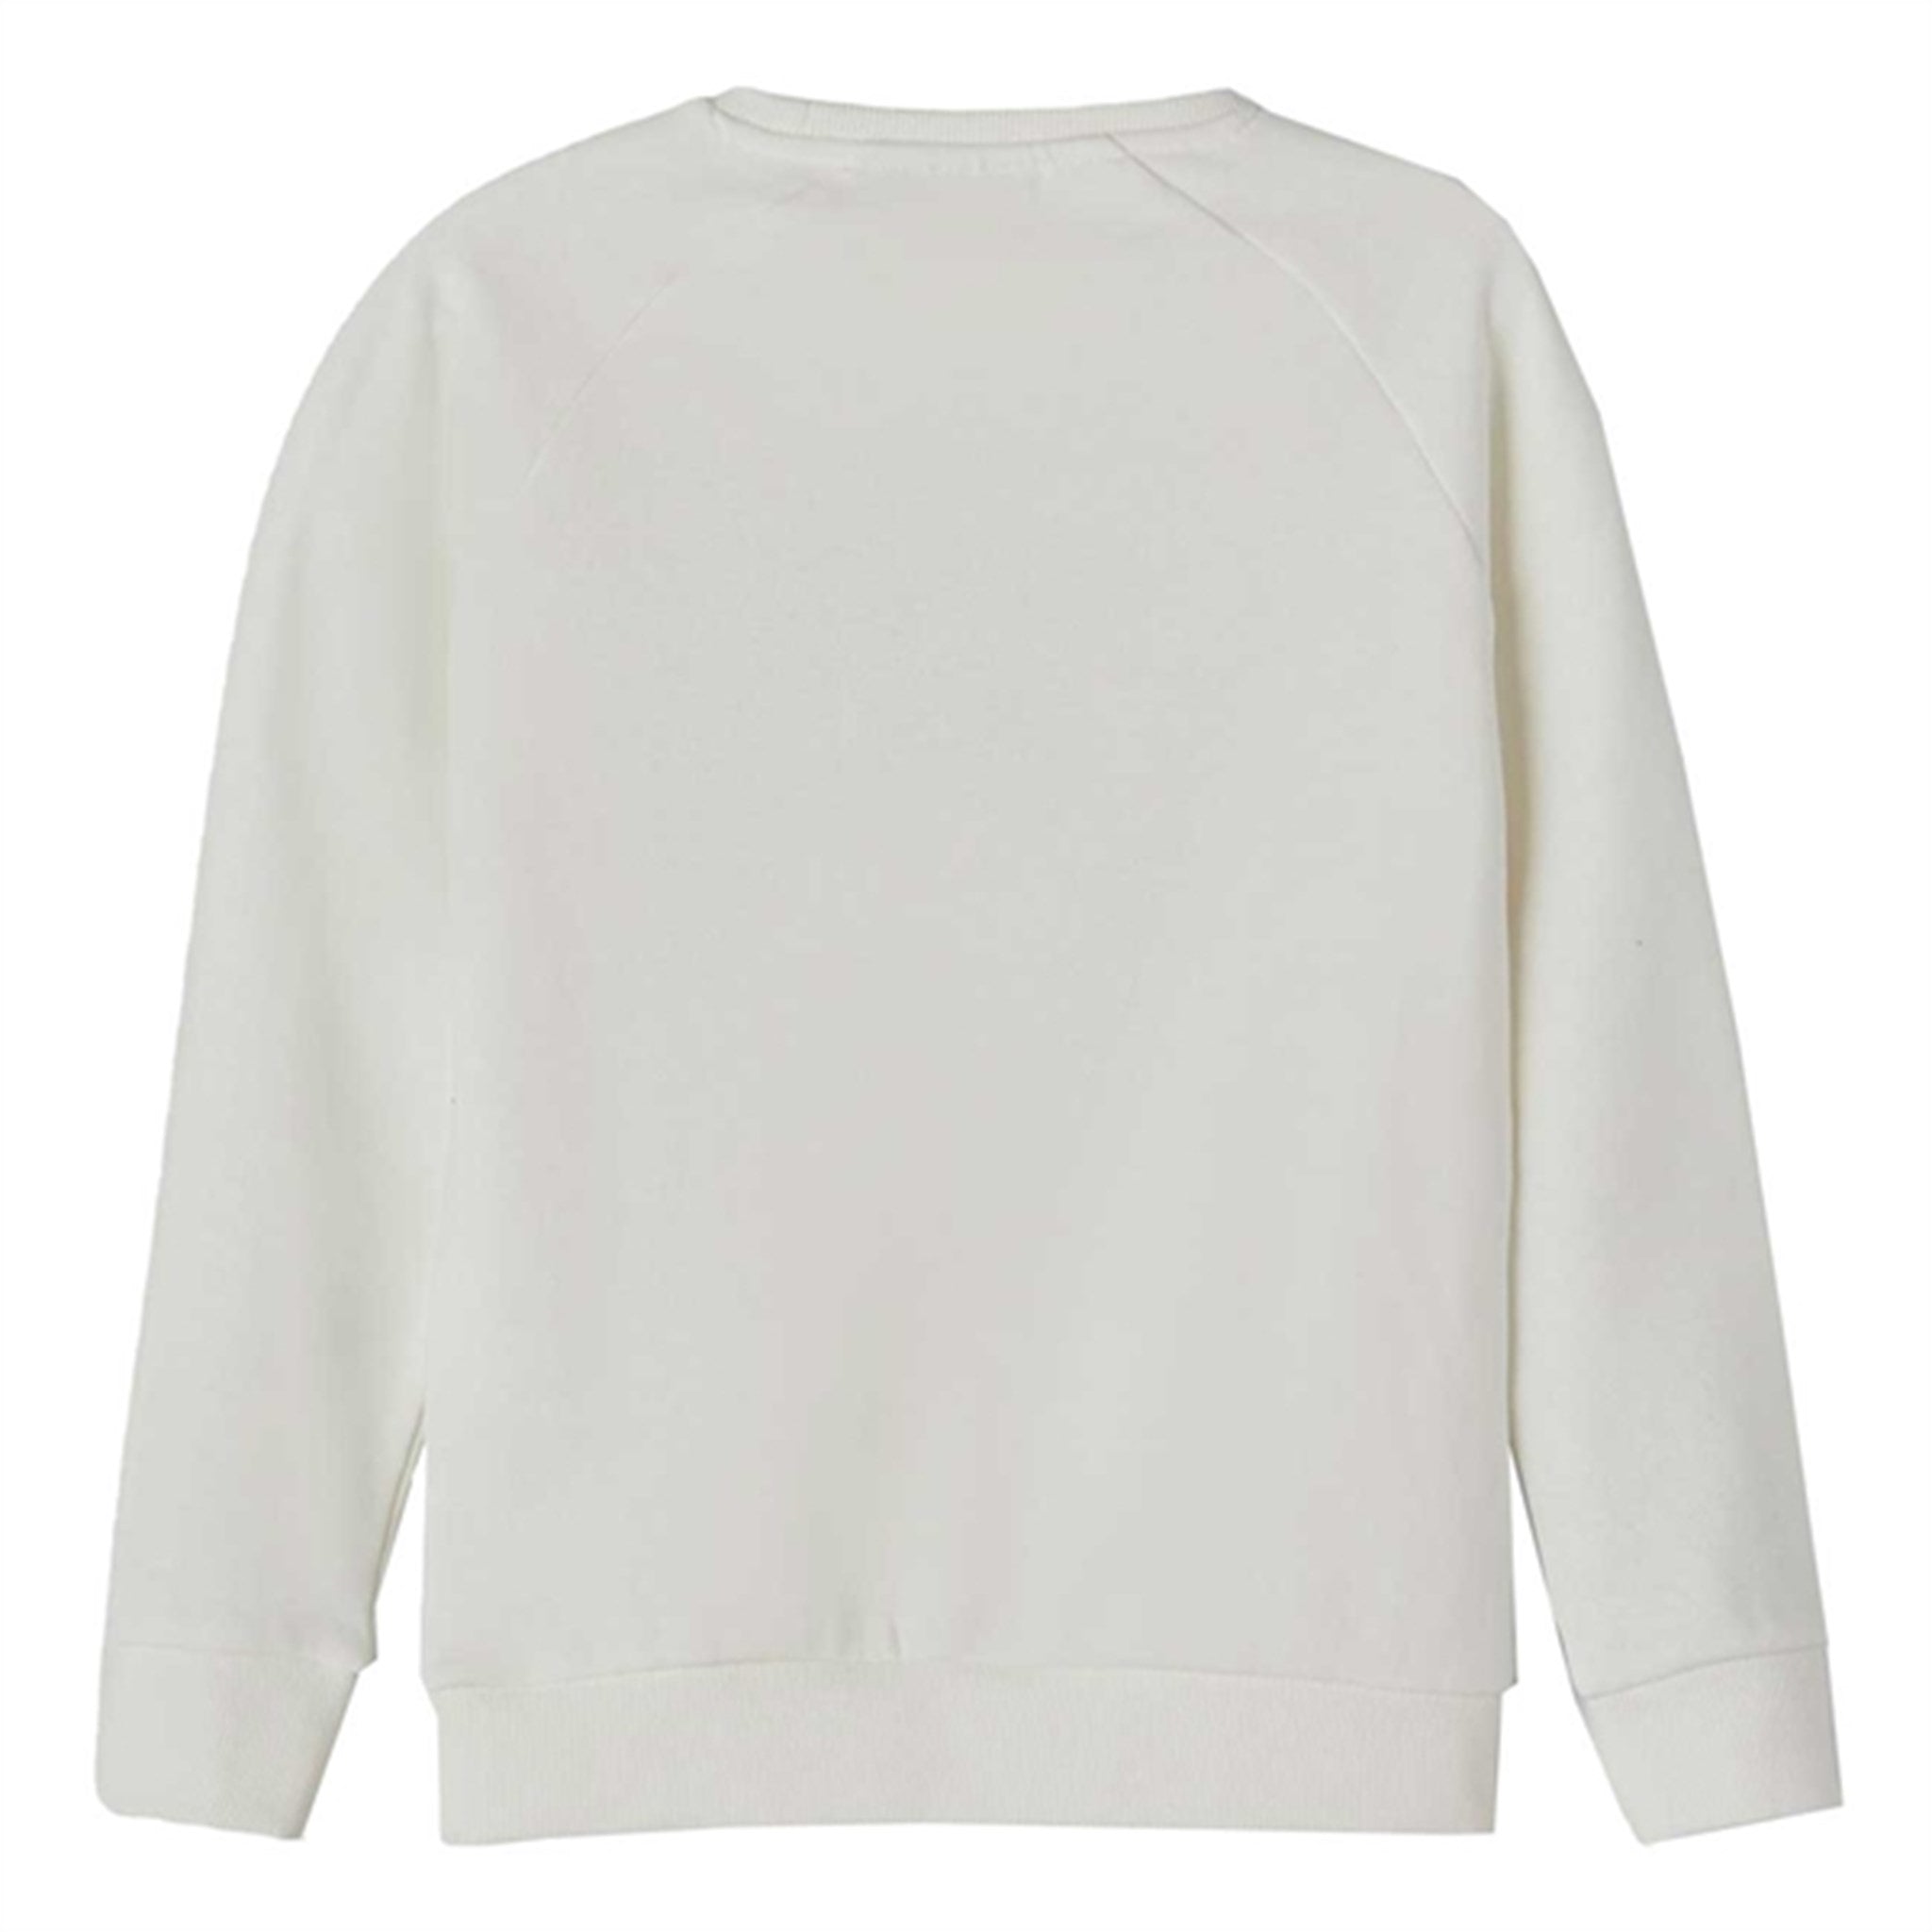 Name It White Alyssum Berlo Sweatshirt 2